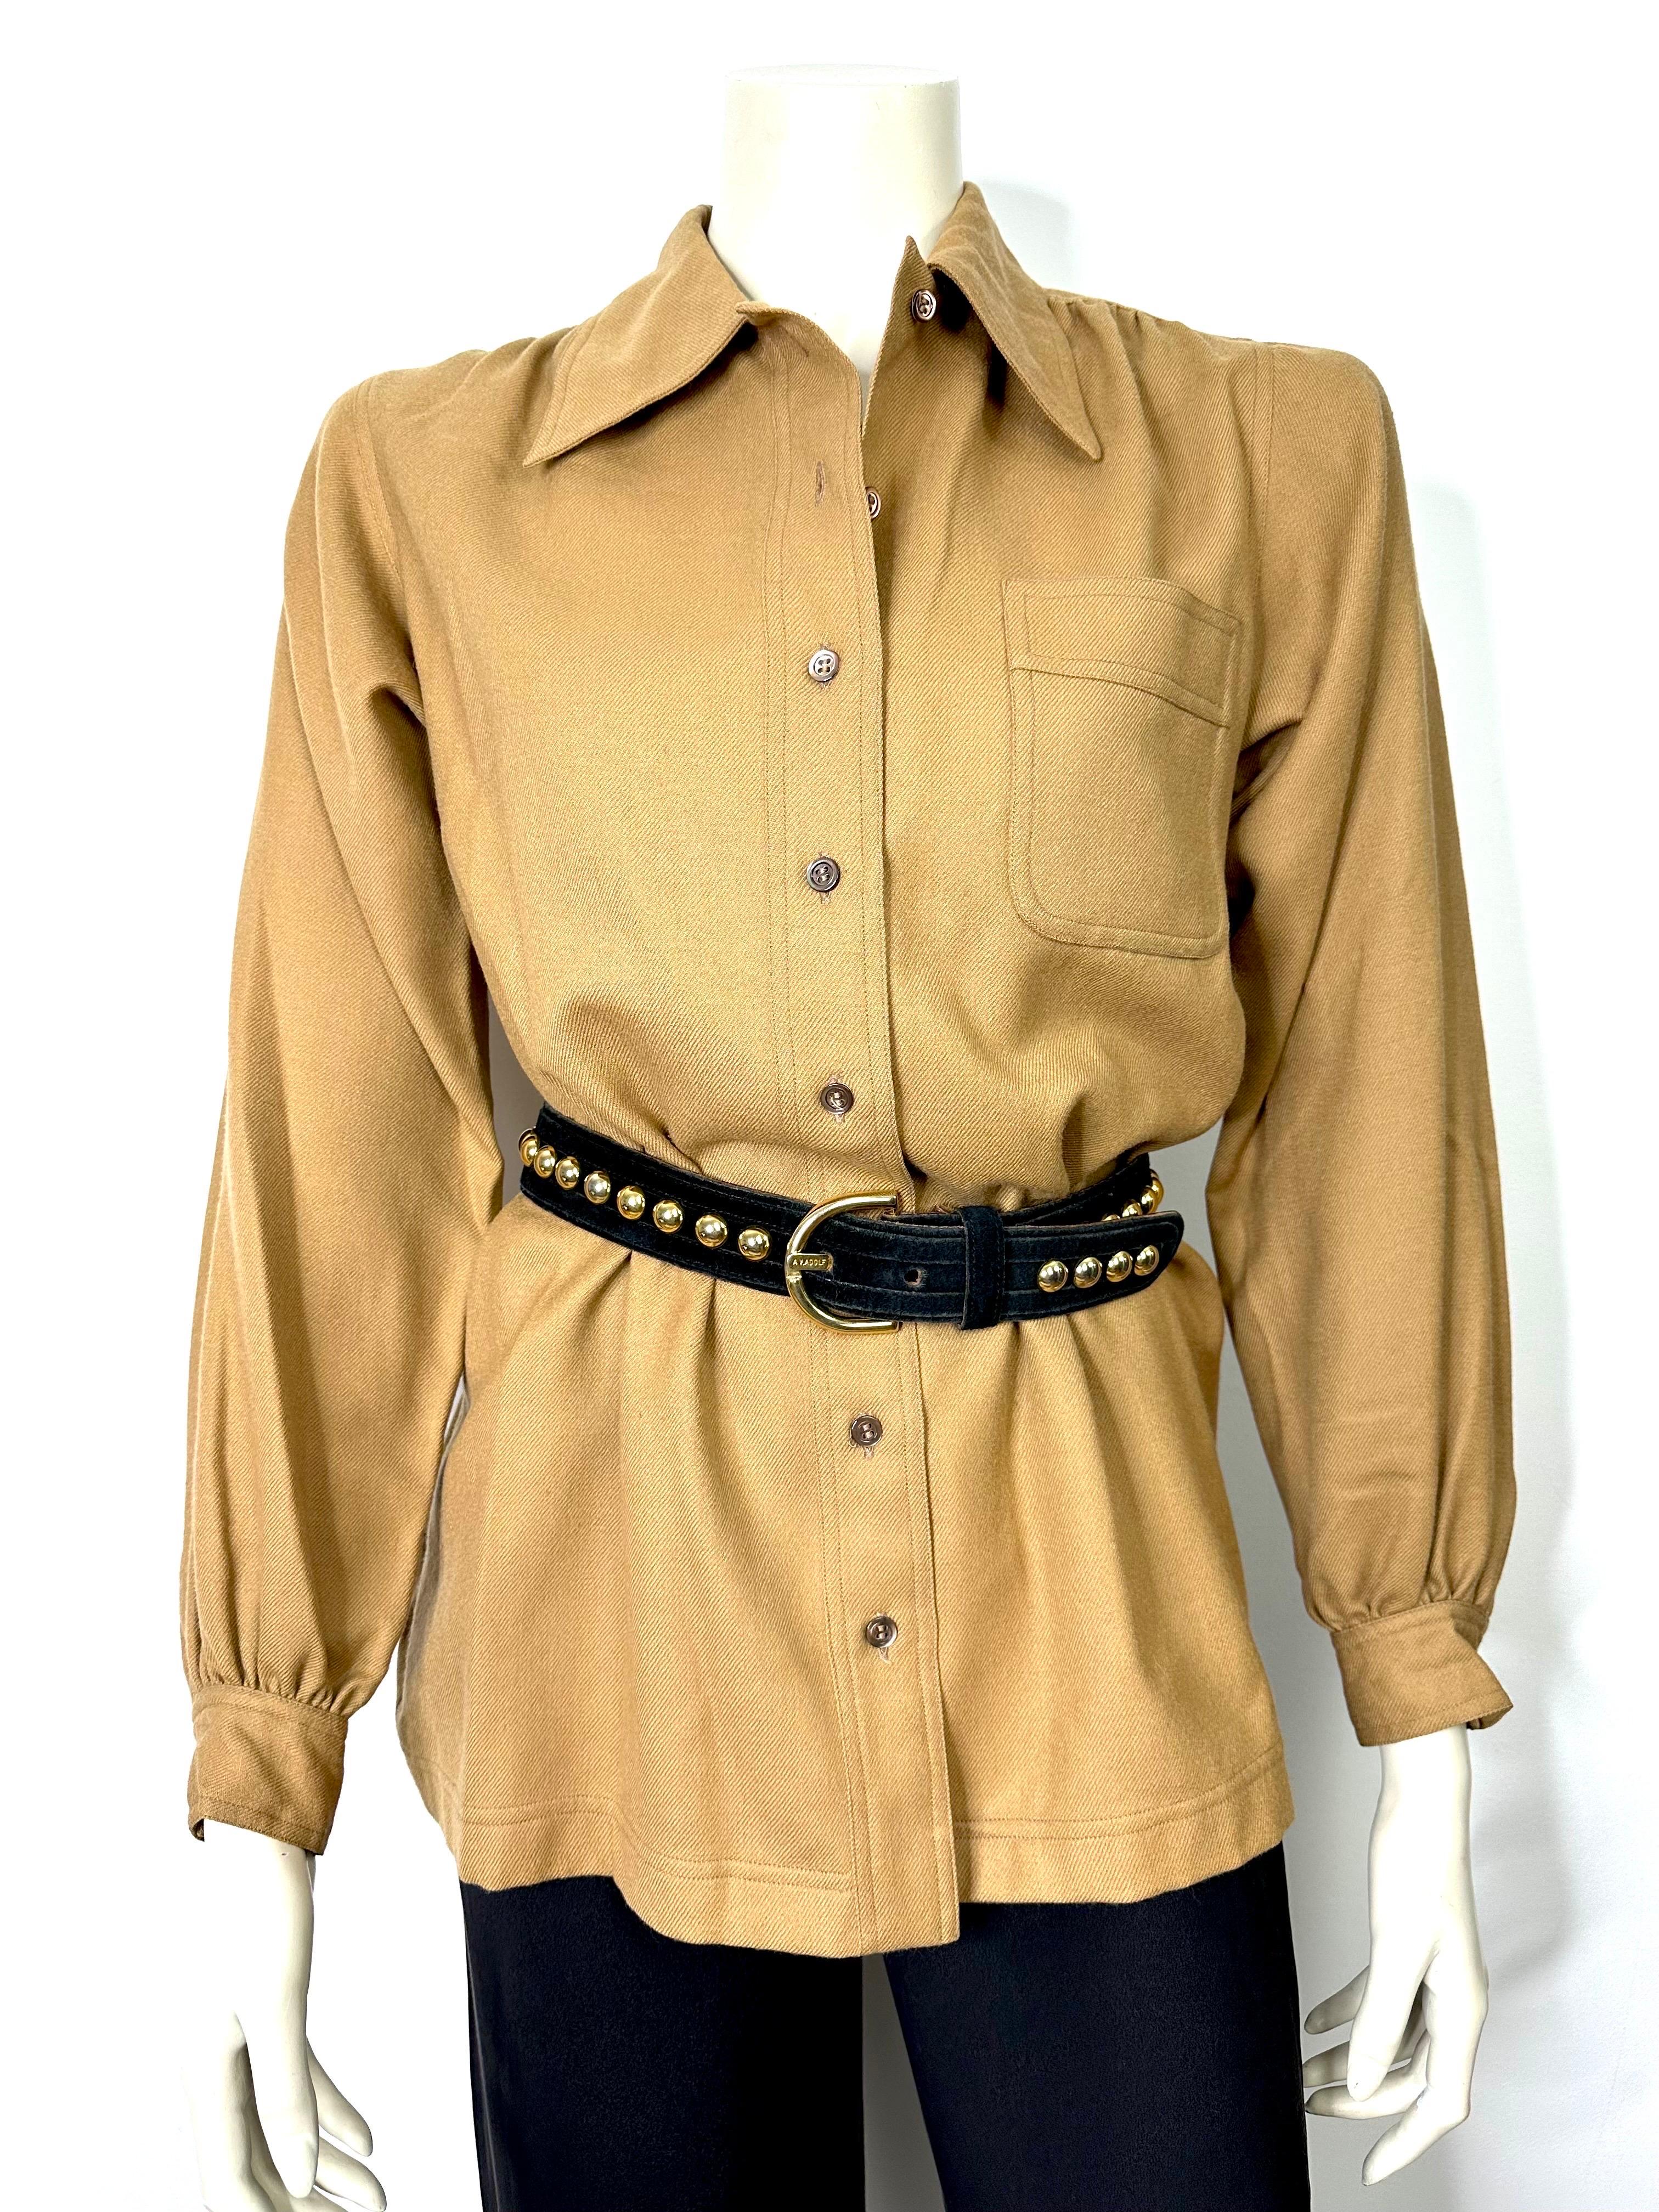 Chemise Yves saint Laurent Rive gauche 1970, style safari, en laine brune, non doublée, boutonnée sur le devant et aux poignets.
Une poche plaquée sur la poitrine.
Épaules et dos plissés.
Col pointu attrayant.
Taille 40, se référer aux